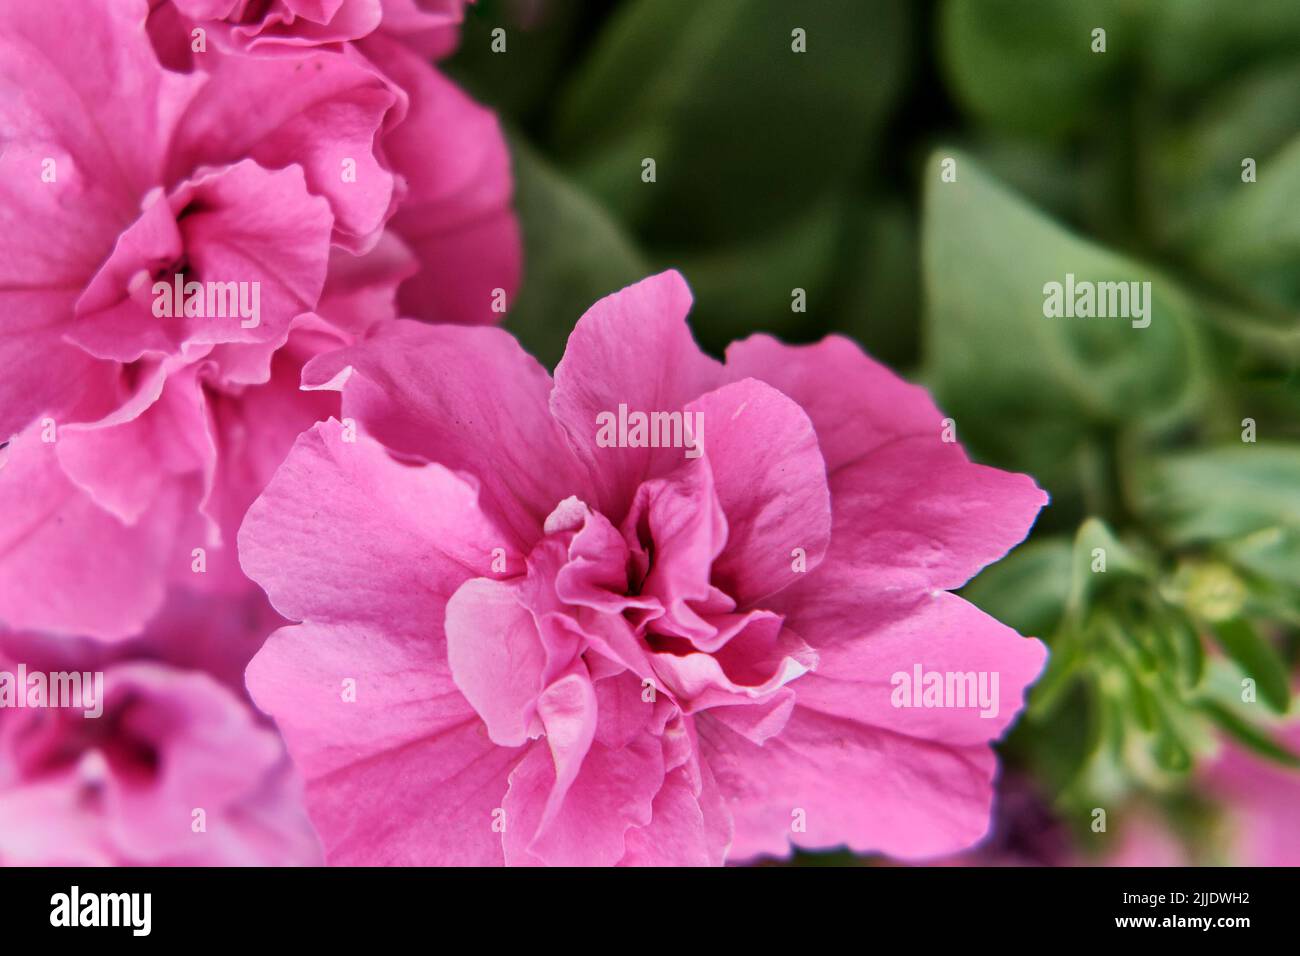 Gros plan de fleurs pétunia en éponge rose. Fond floral. Fond d'écran ou carte de vœux à motif nature Banque D'Images